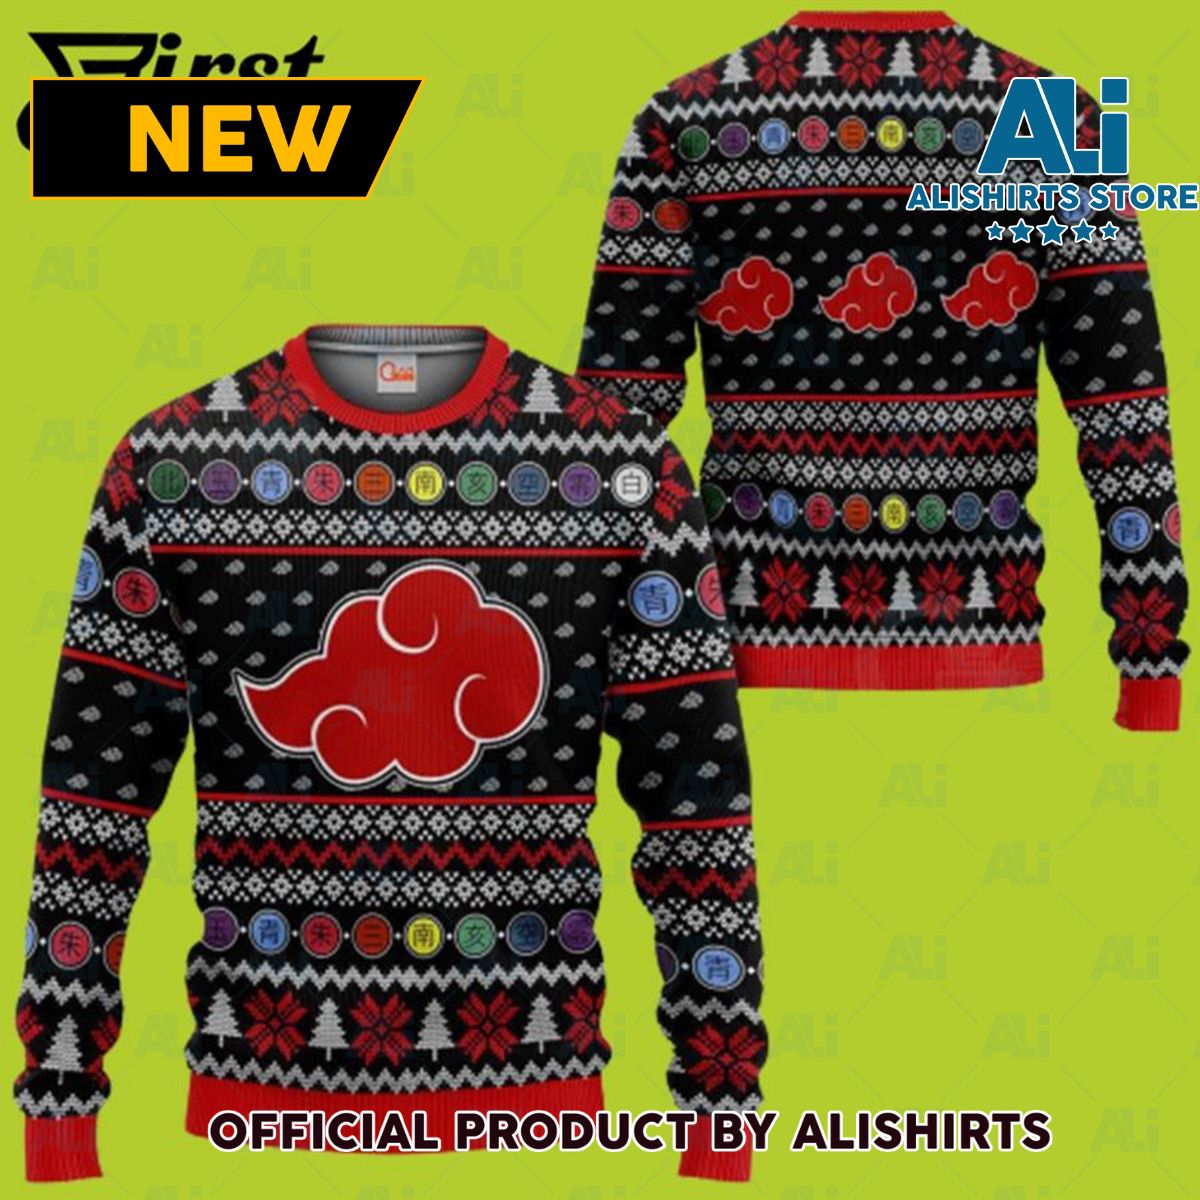 Akatsuki Ugly Christmas Sweater Naruto Anime Custom Xmas Gift